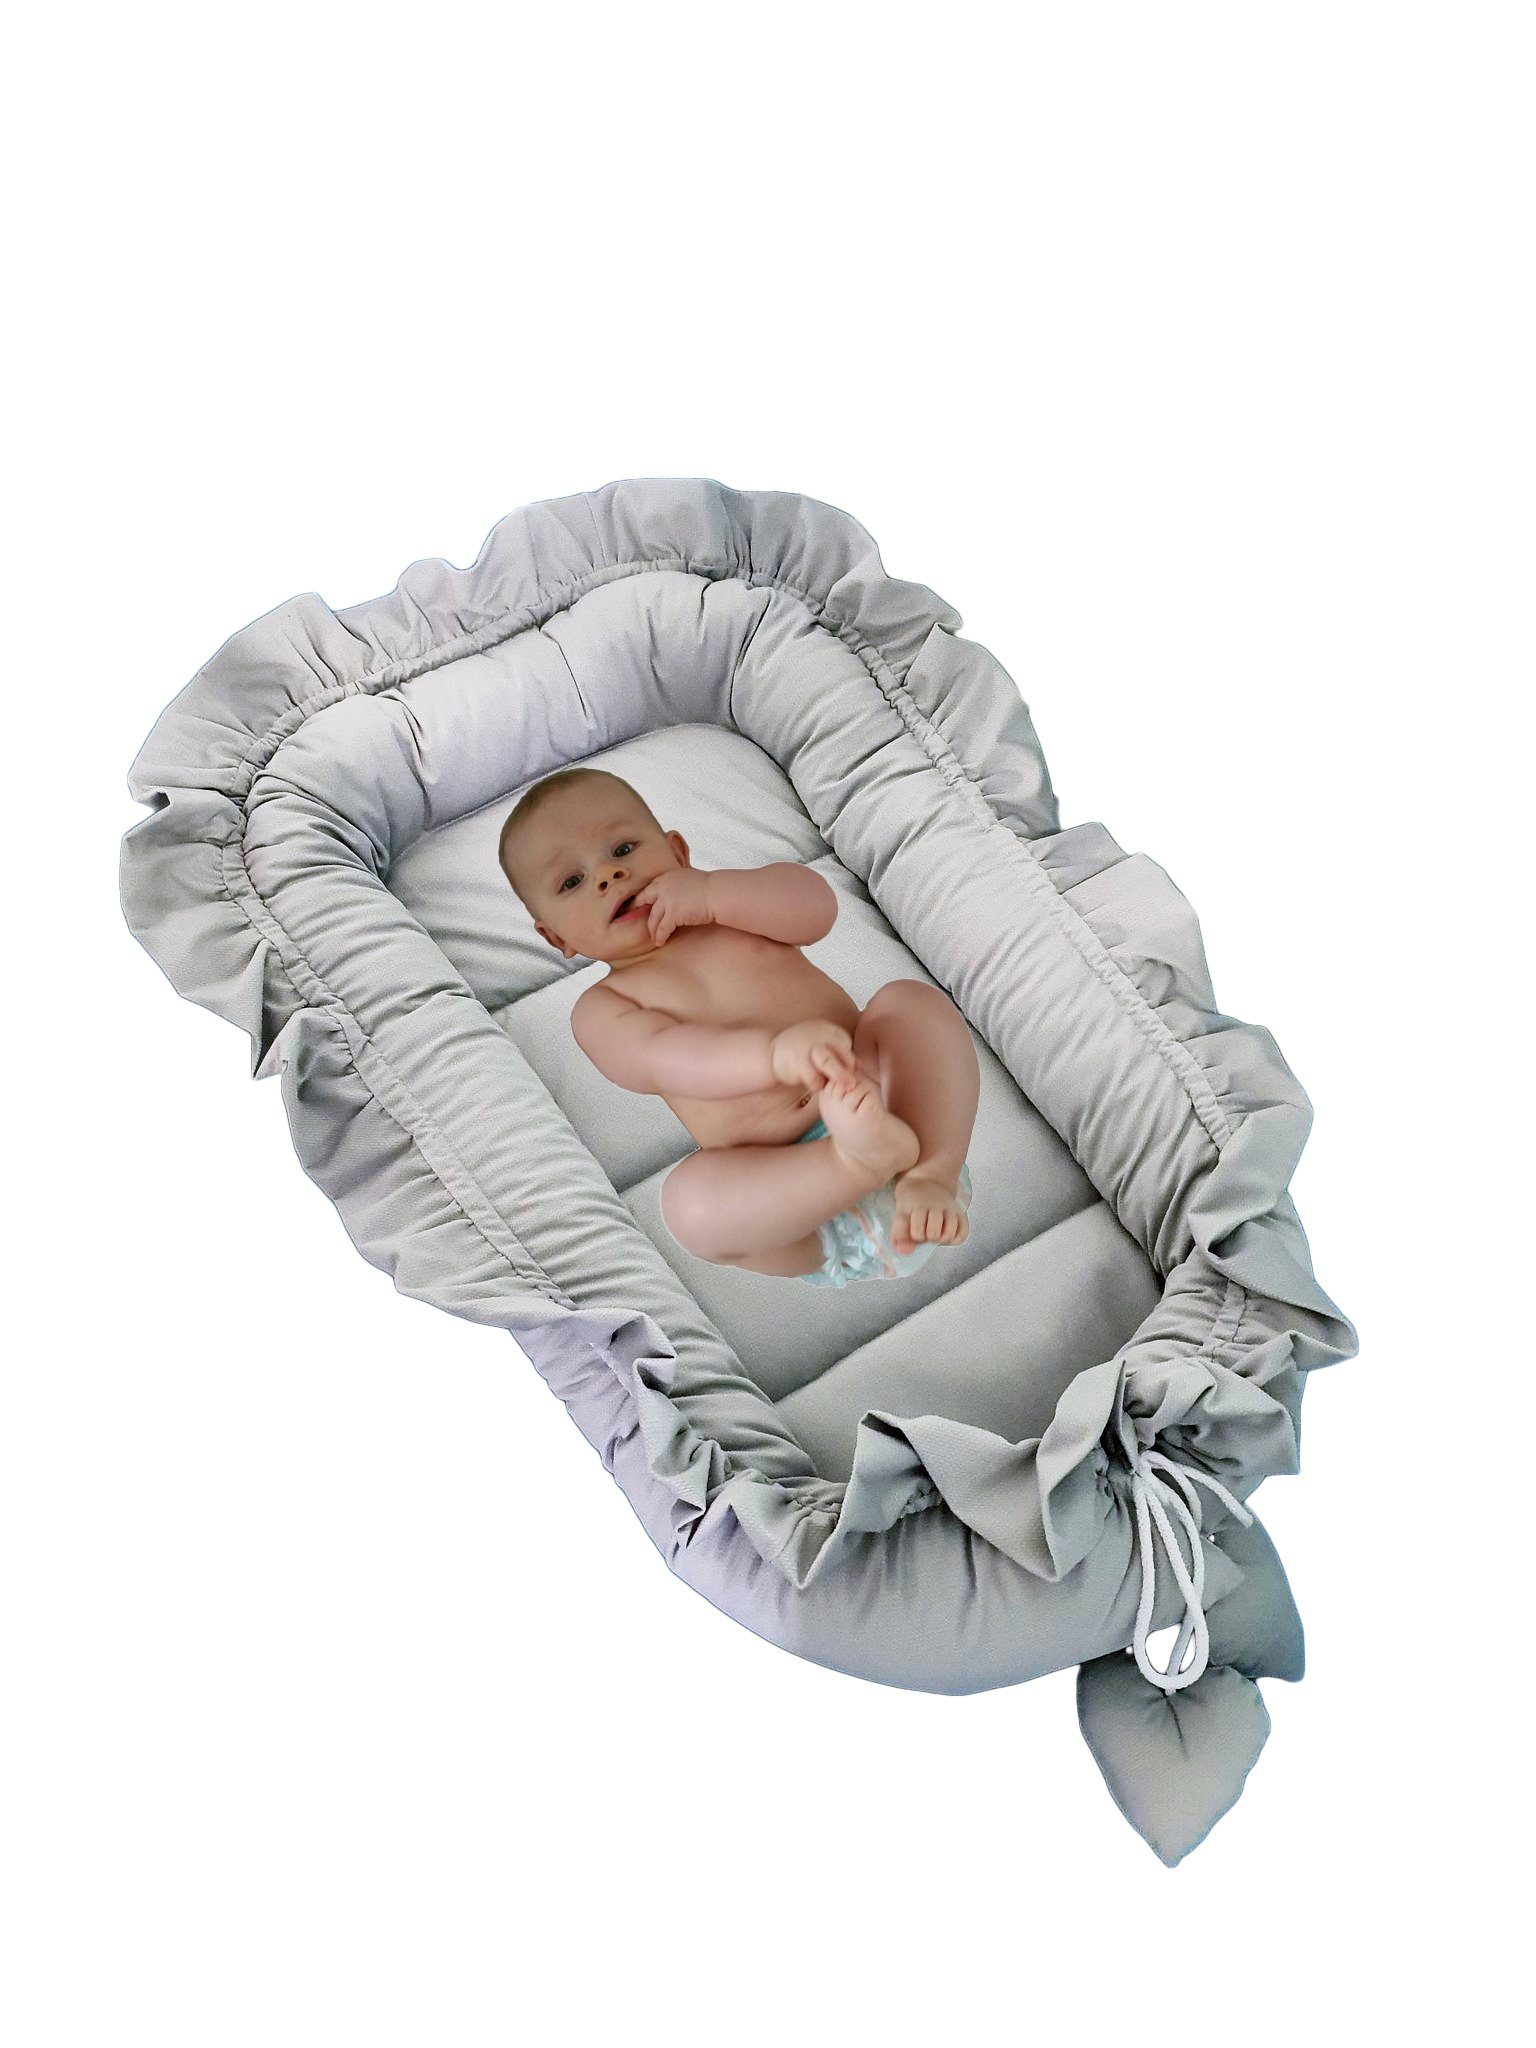 Nestchen Reisebett Neugeborene Babyliege antiallergischre Abdeckung Neugeborene Kuschelnest für 0-12 Monate Babys Baby nest Kokon für Babys und Säuglinge 